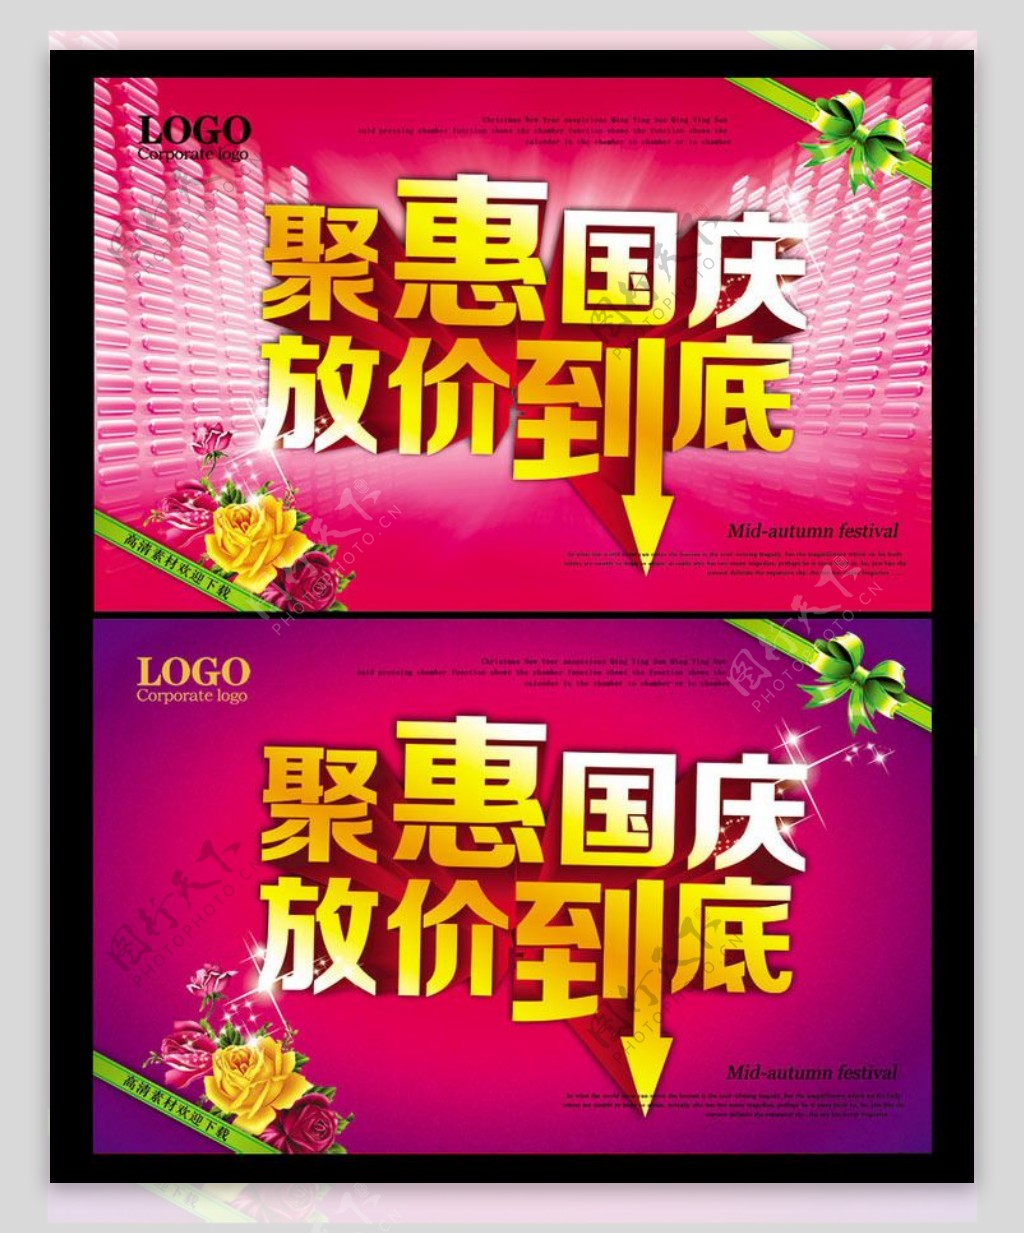 聚惠国庆促销海报设计PSD素材